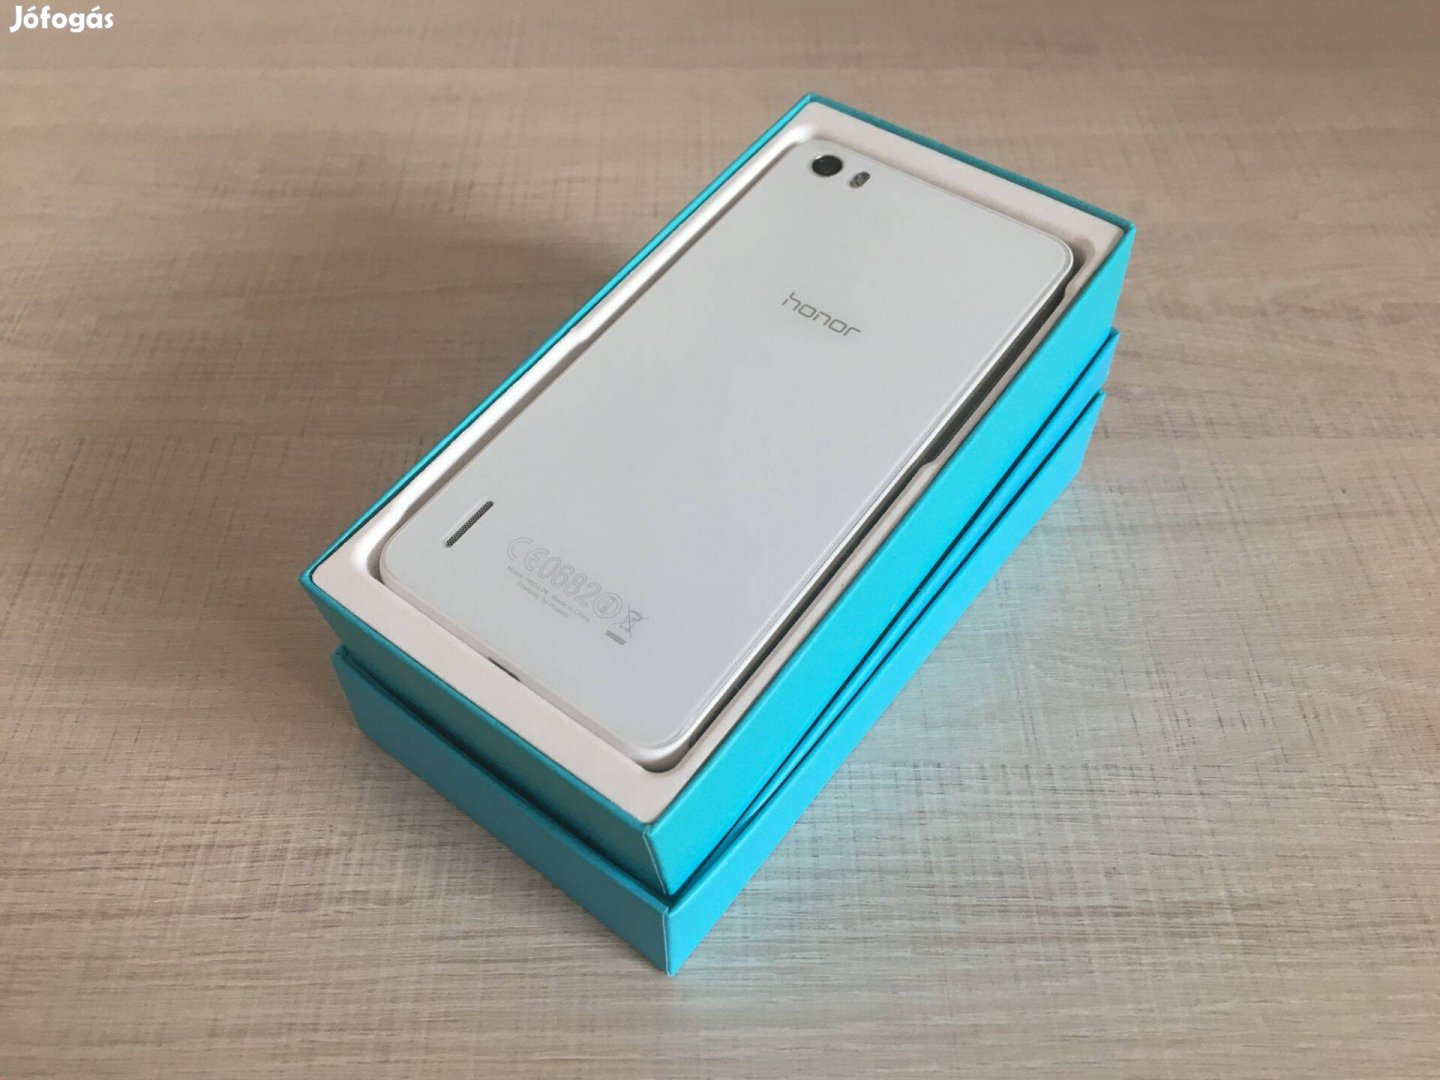 Huawei Honor 6 16GB, Új (0 Perces), Új kiegészítők, Garancia